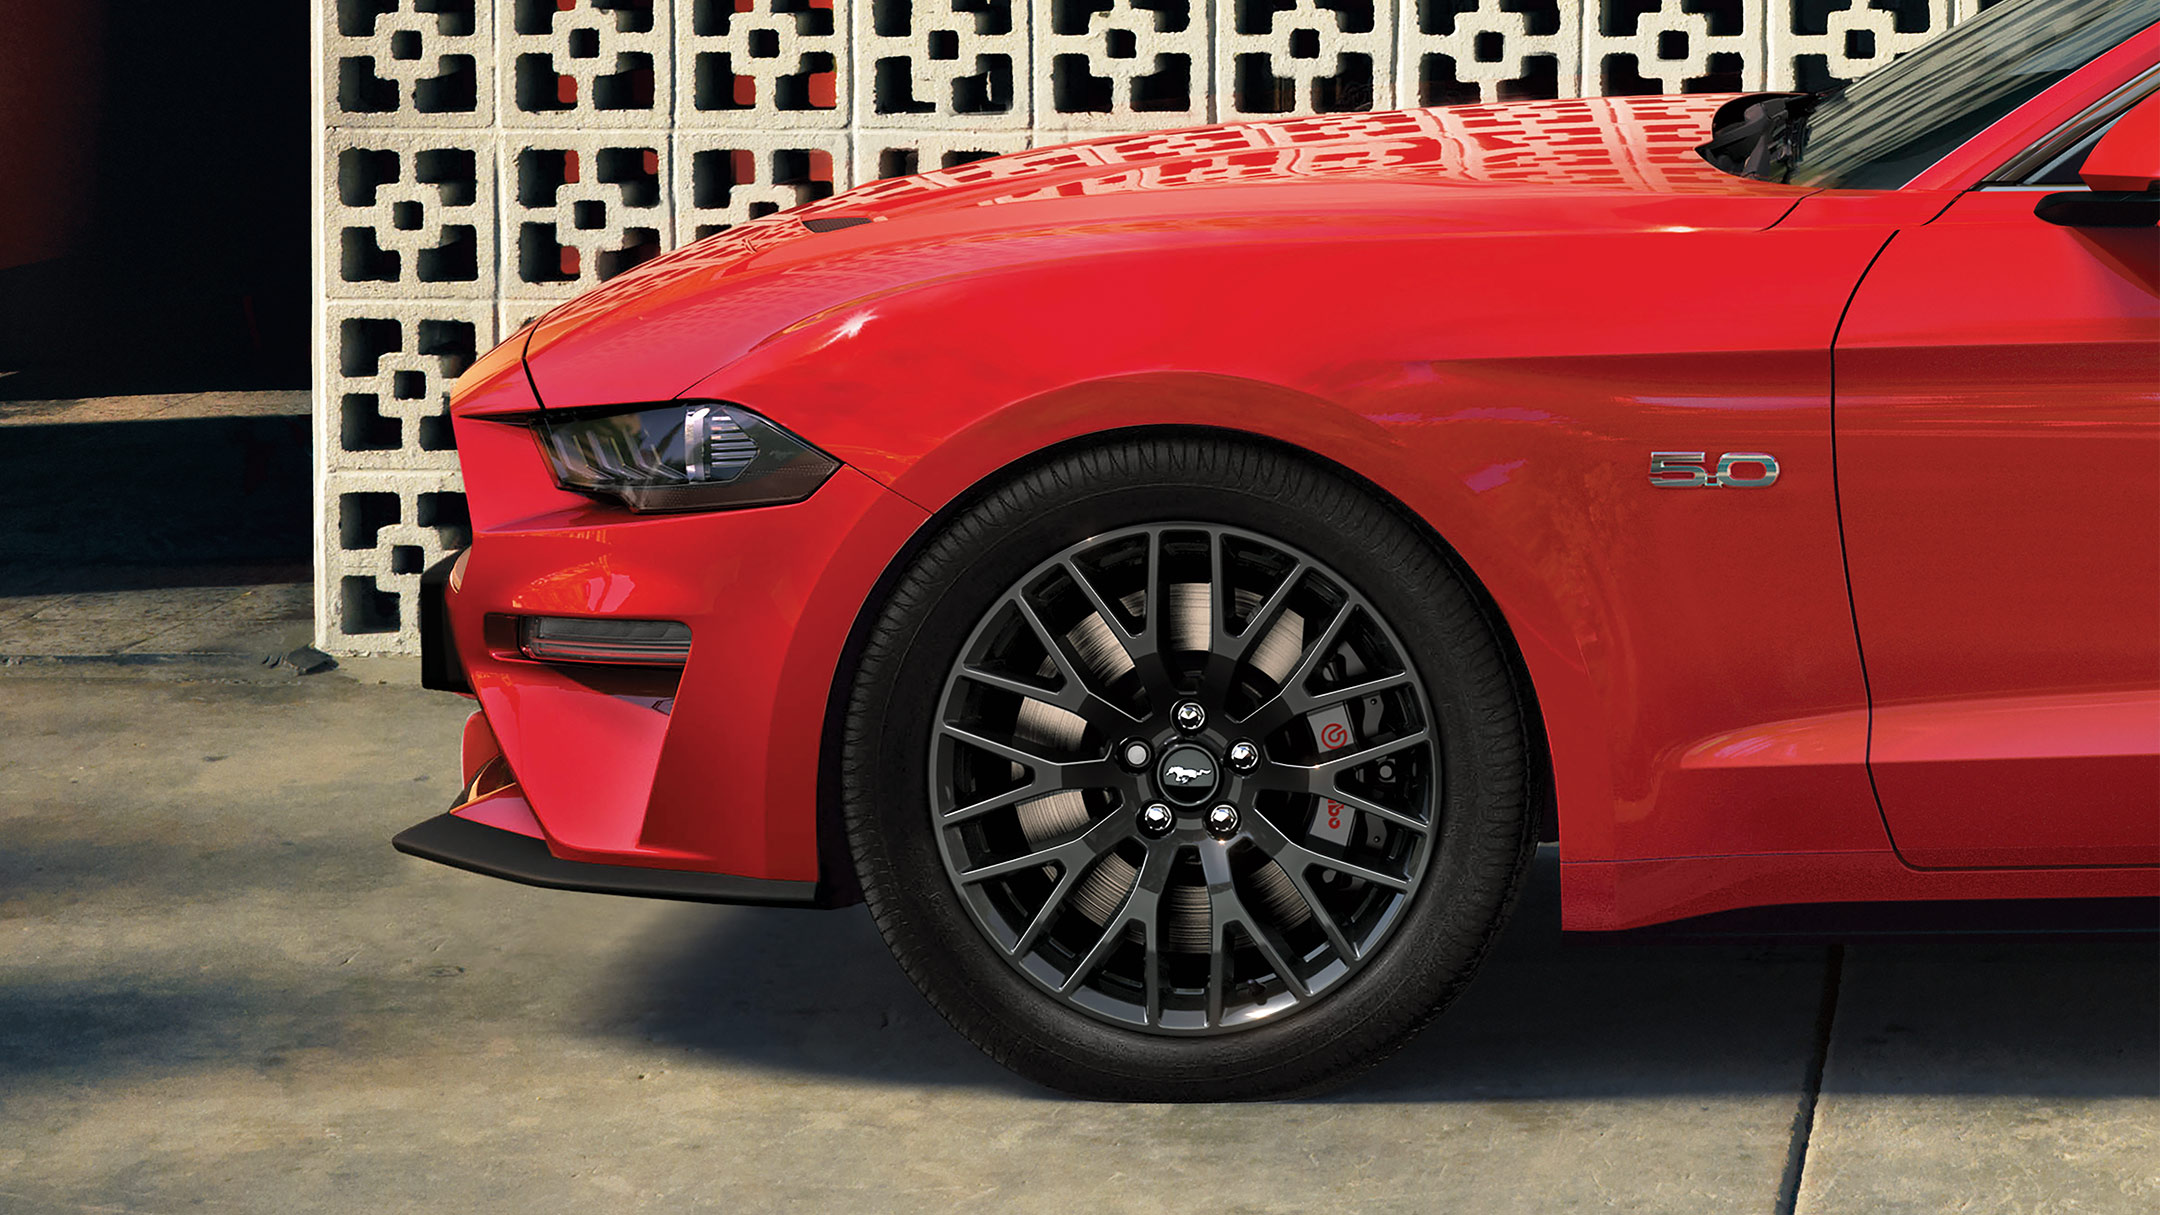  Ford Mustang in Rot. Seitenansicht der Front, parkend vor einer verzierten Steinmauer